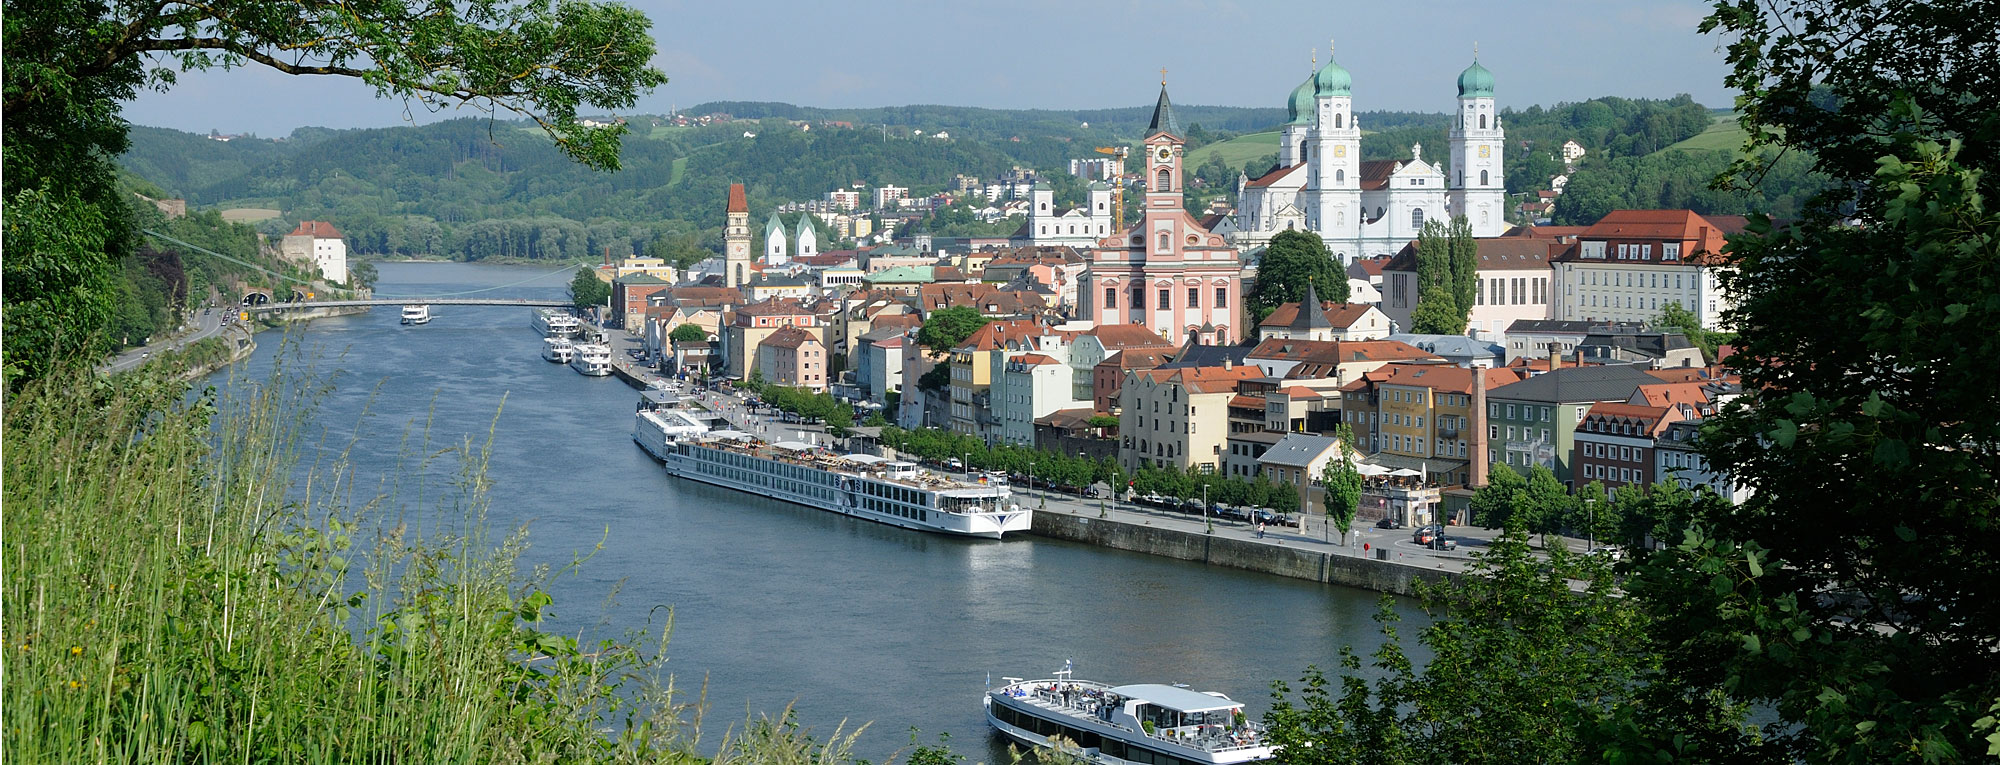 Urlaub im Passauer Land in Bayern